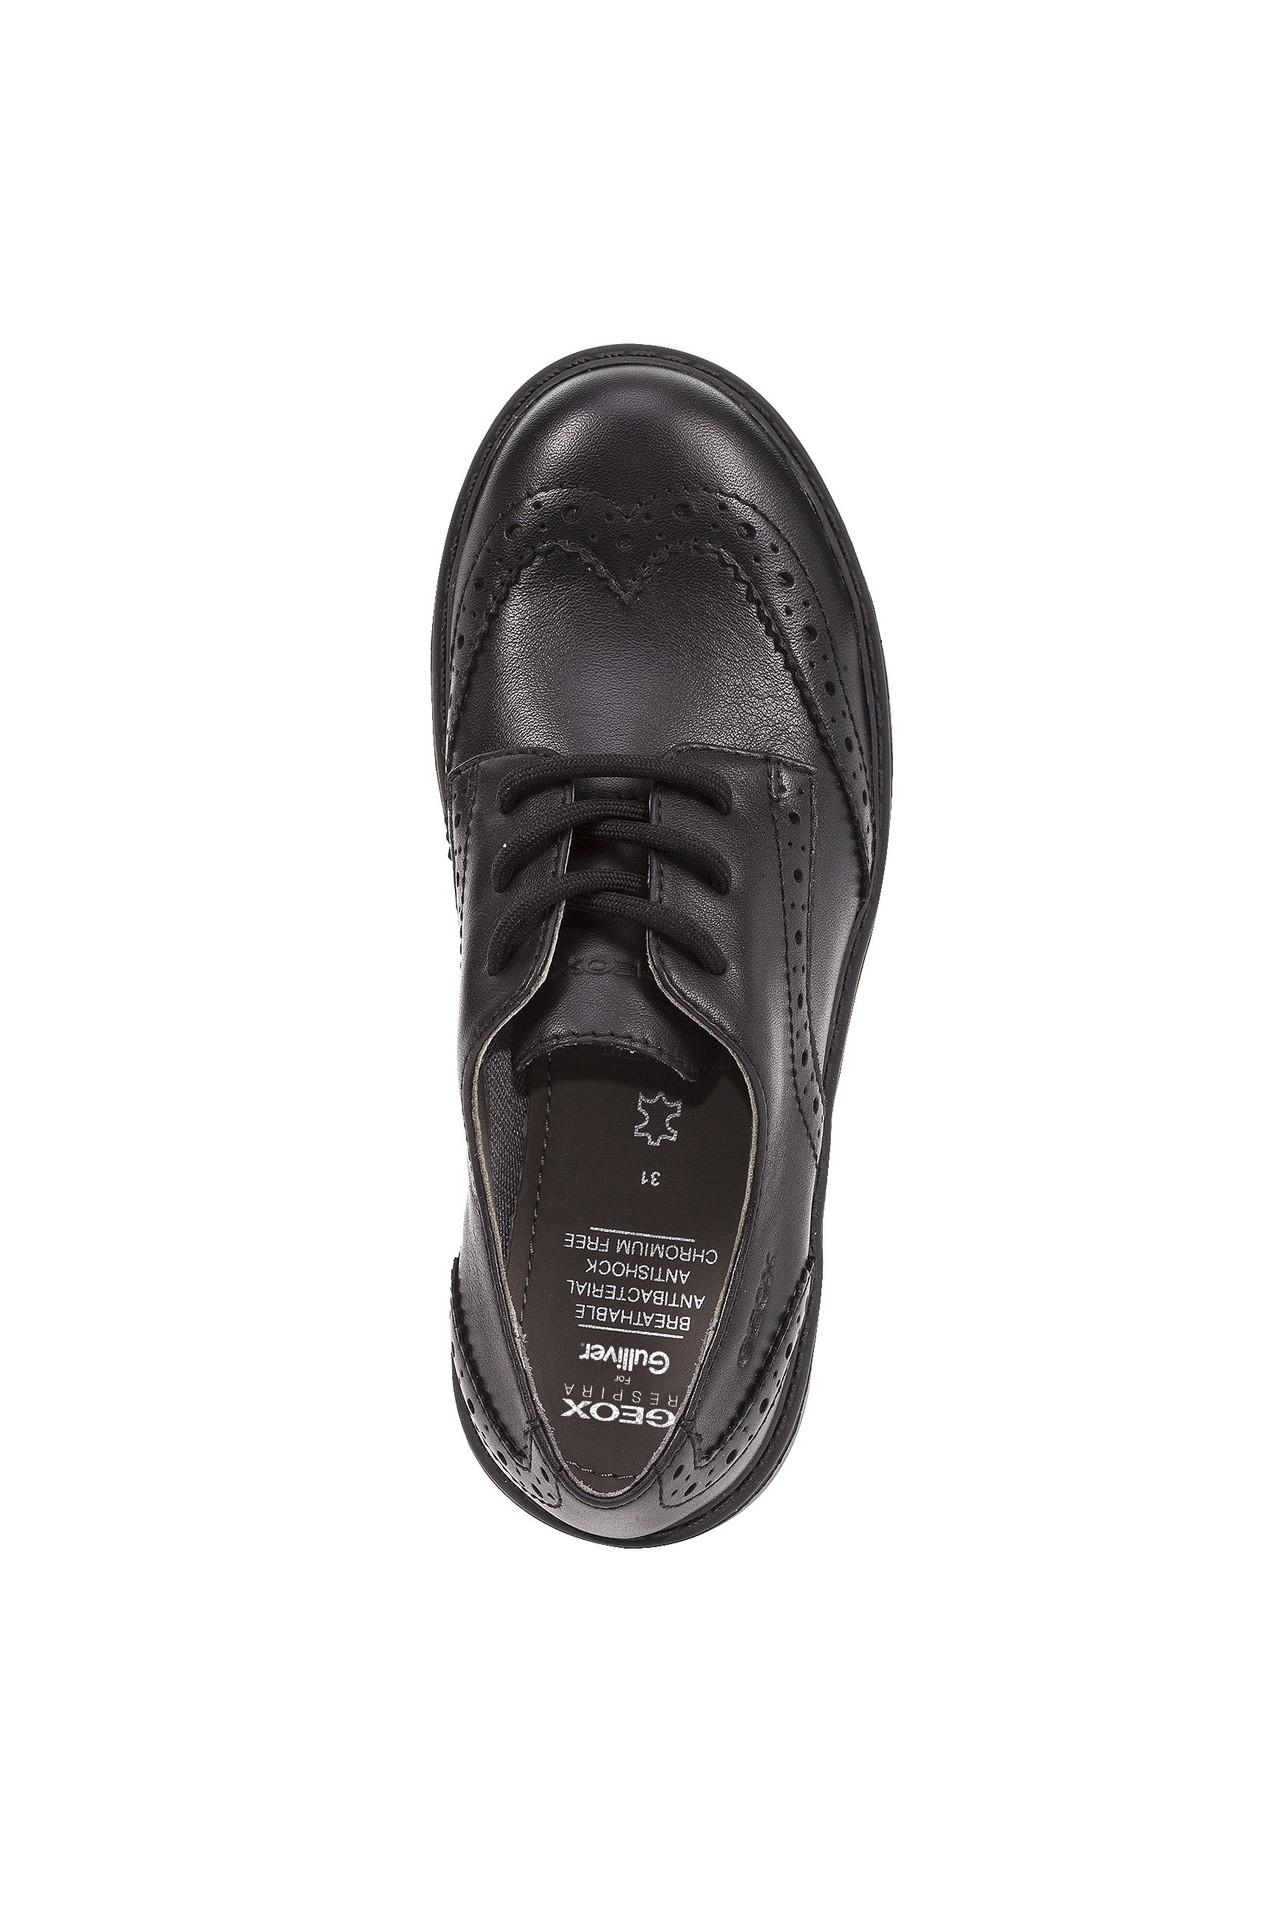 Туфли дерби Geox J6420NL0085C9999, размер 35, цвет черный - фото 5